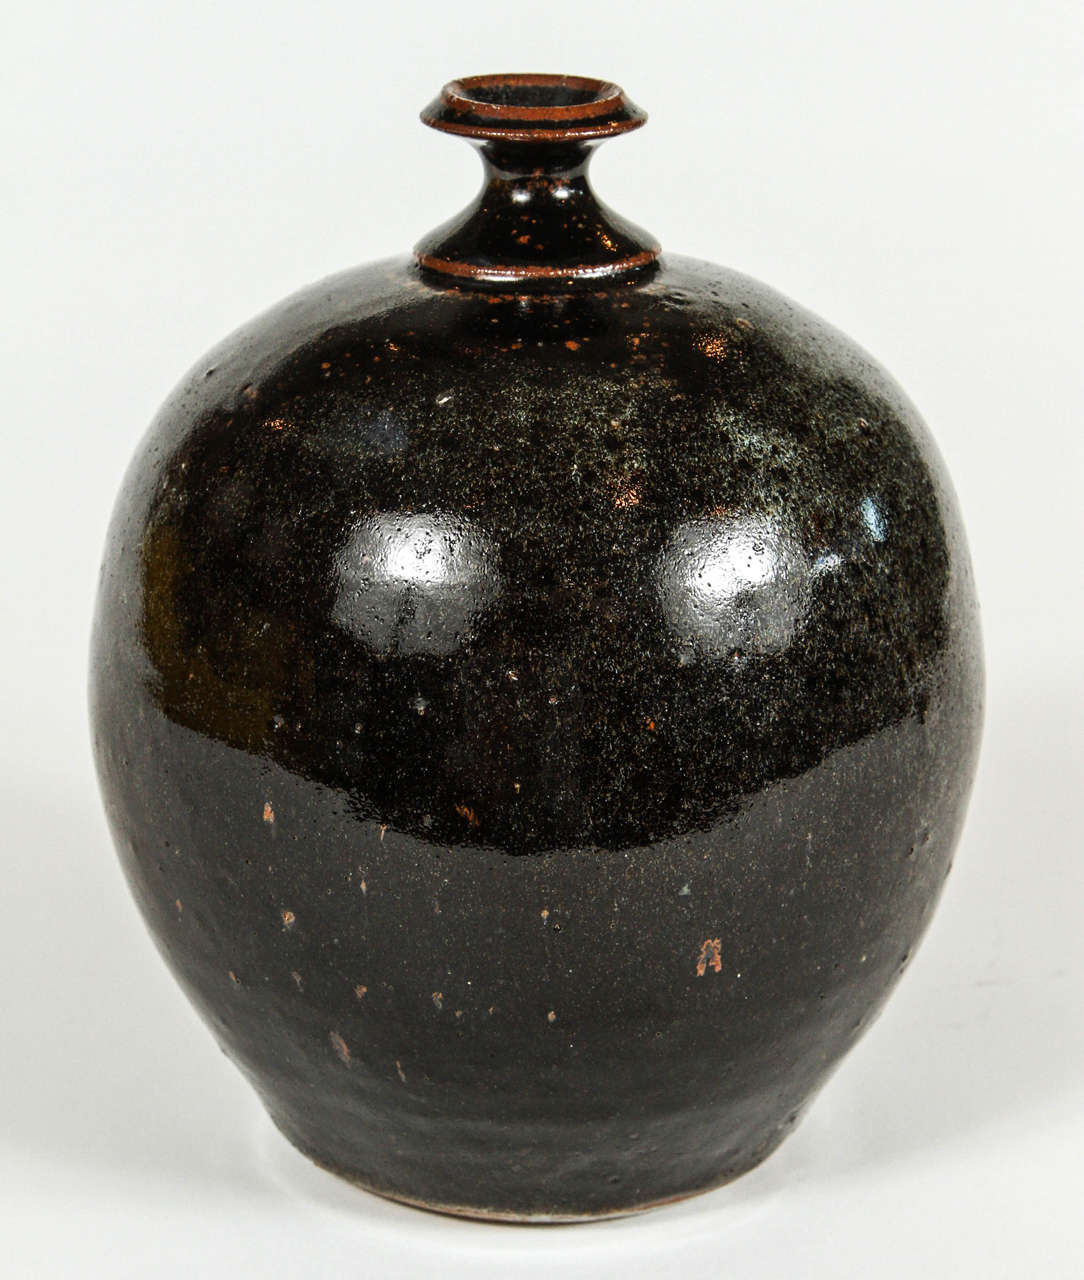 Vintage pottery pot with black speckle glaze, circa 1970s.